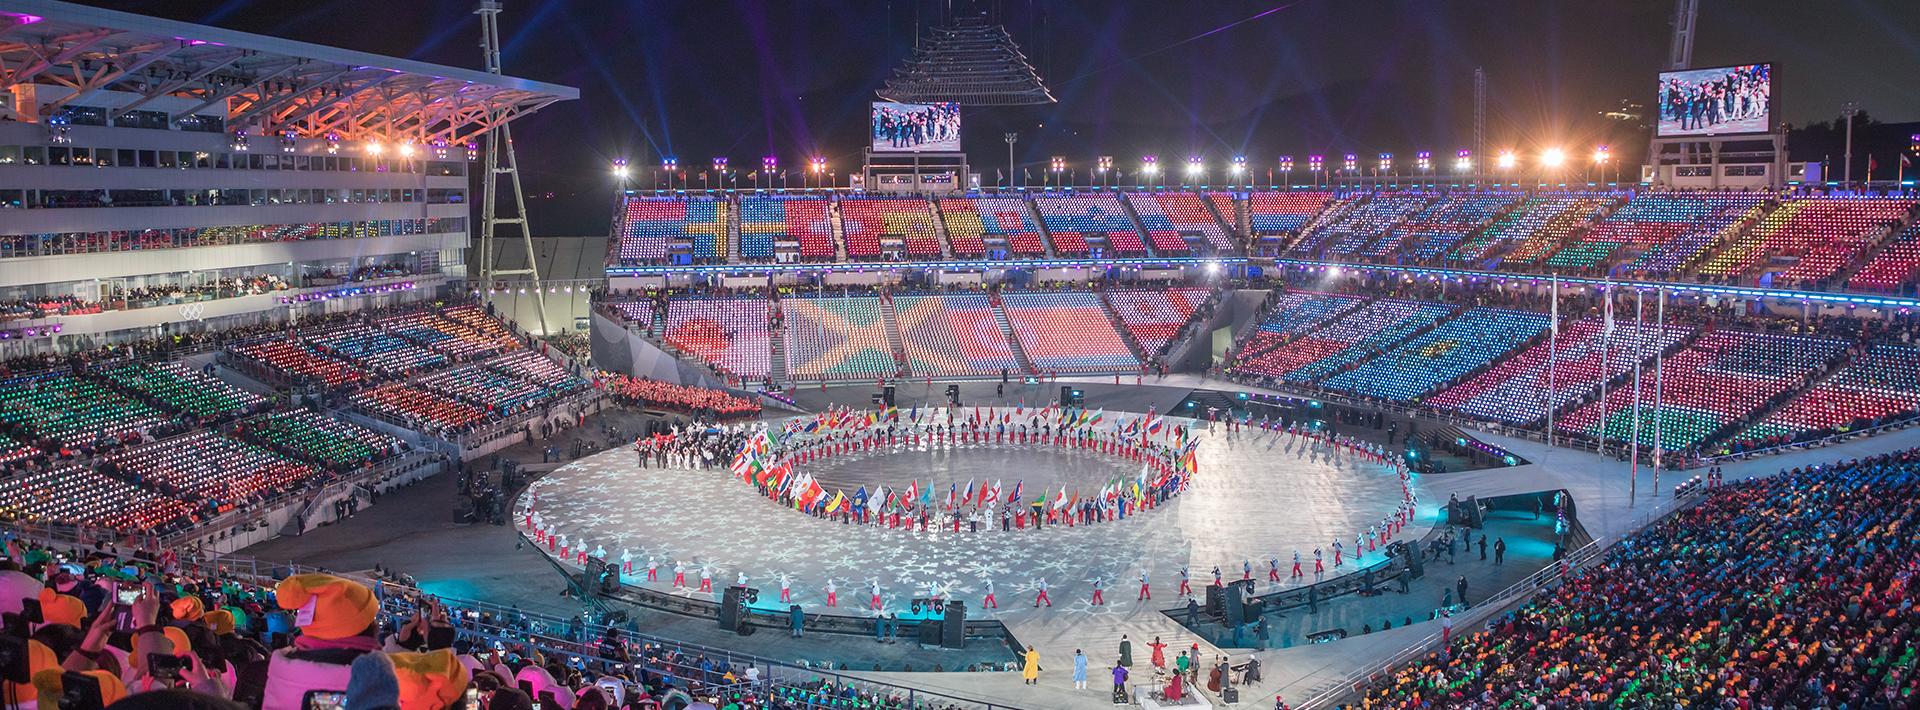 2018 평창올림픽 개폐회장